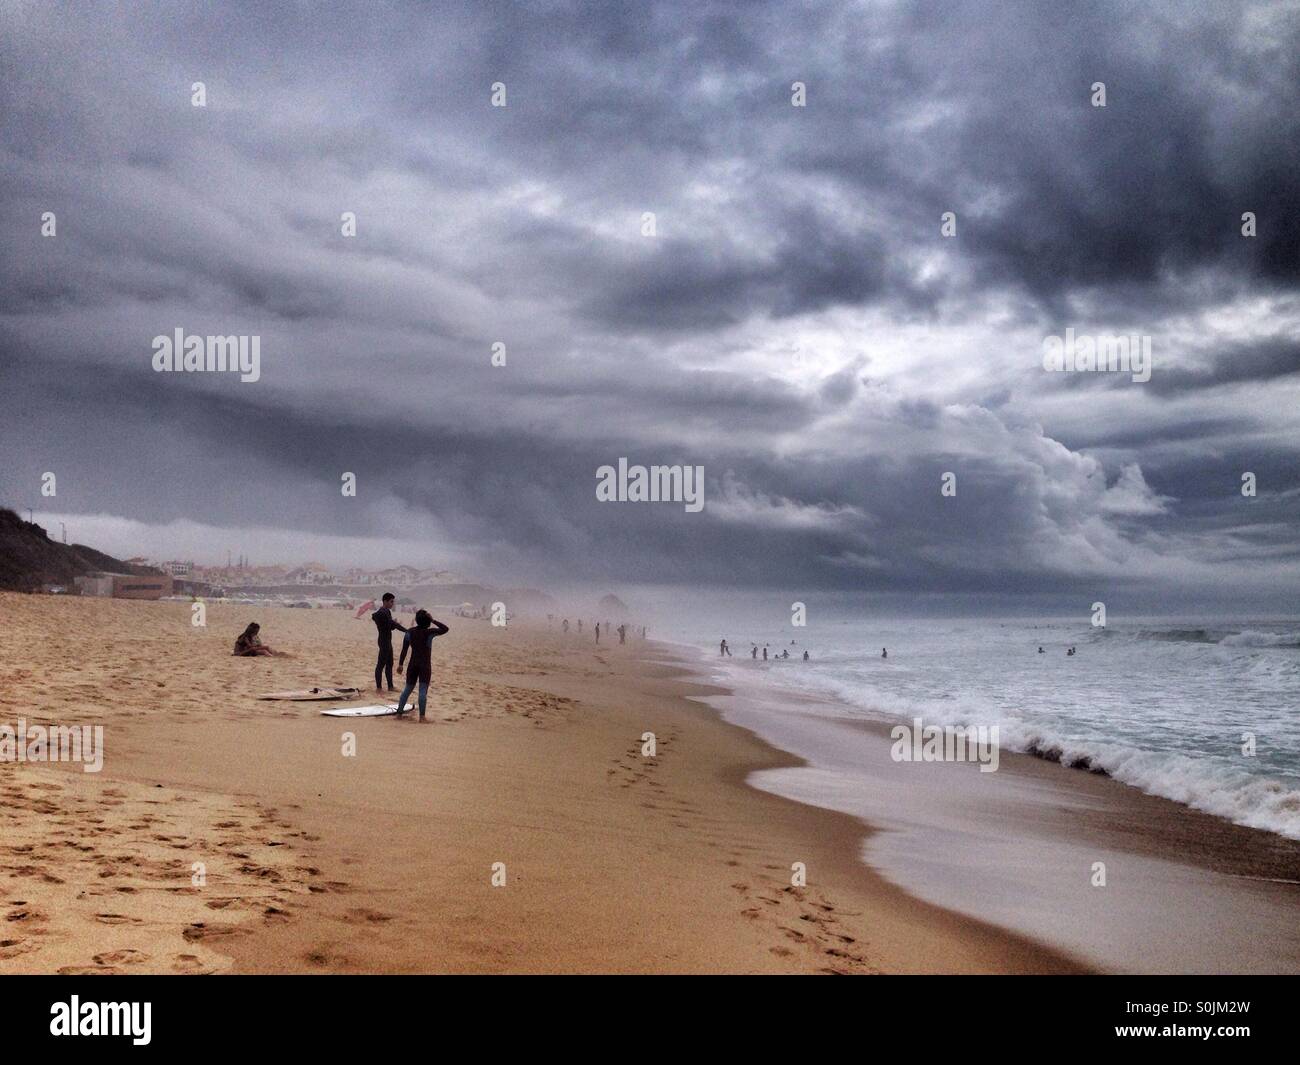 Persone navigare sotto una tempesta nell'Oceano Atlantico, la costa occidentale del Portogallo, con enormi e scure nuvole grigie nel cielo Foto Stock